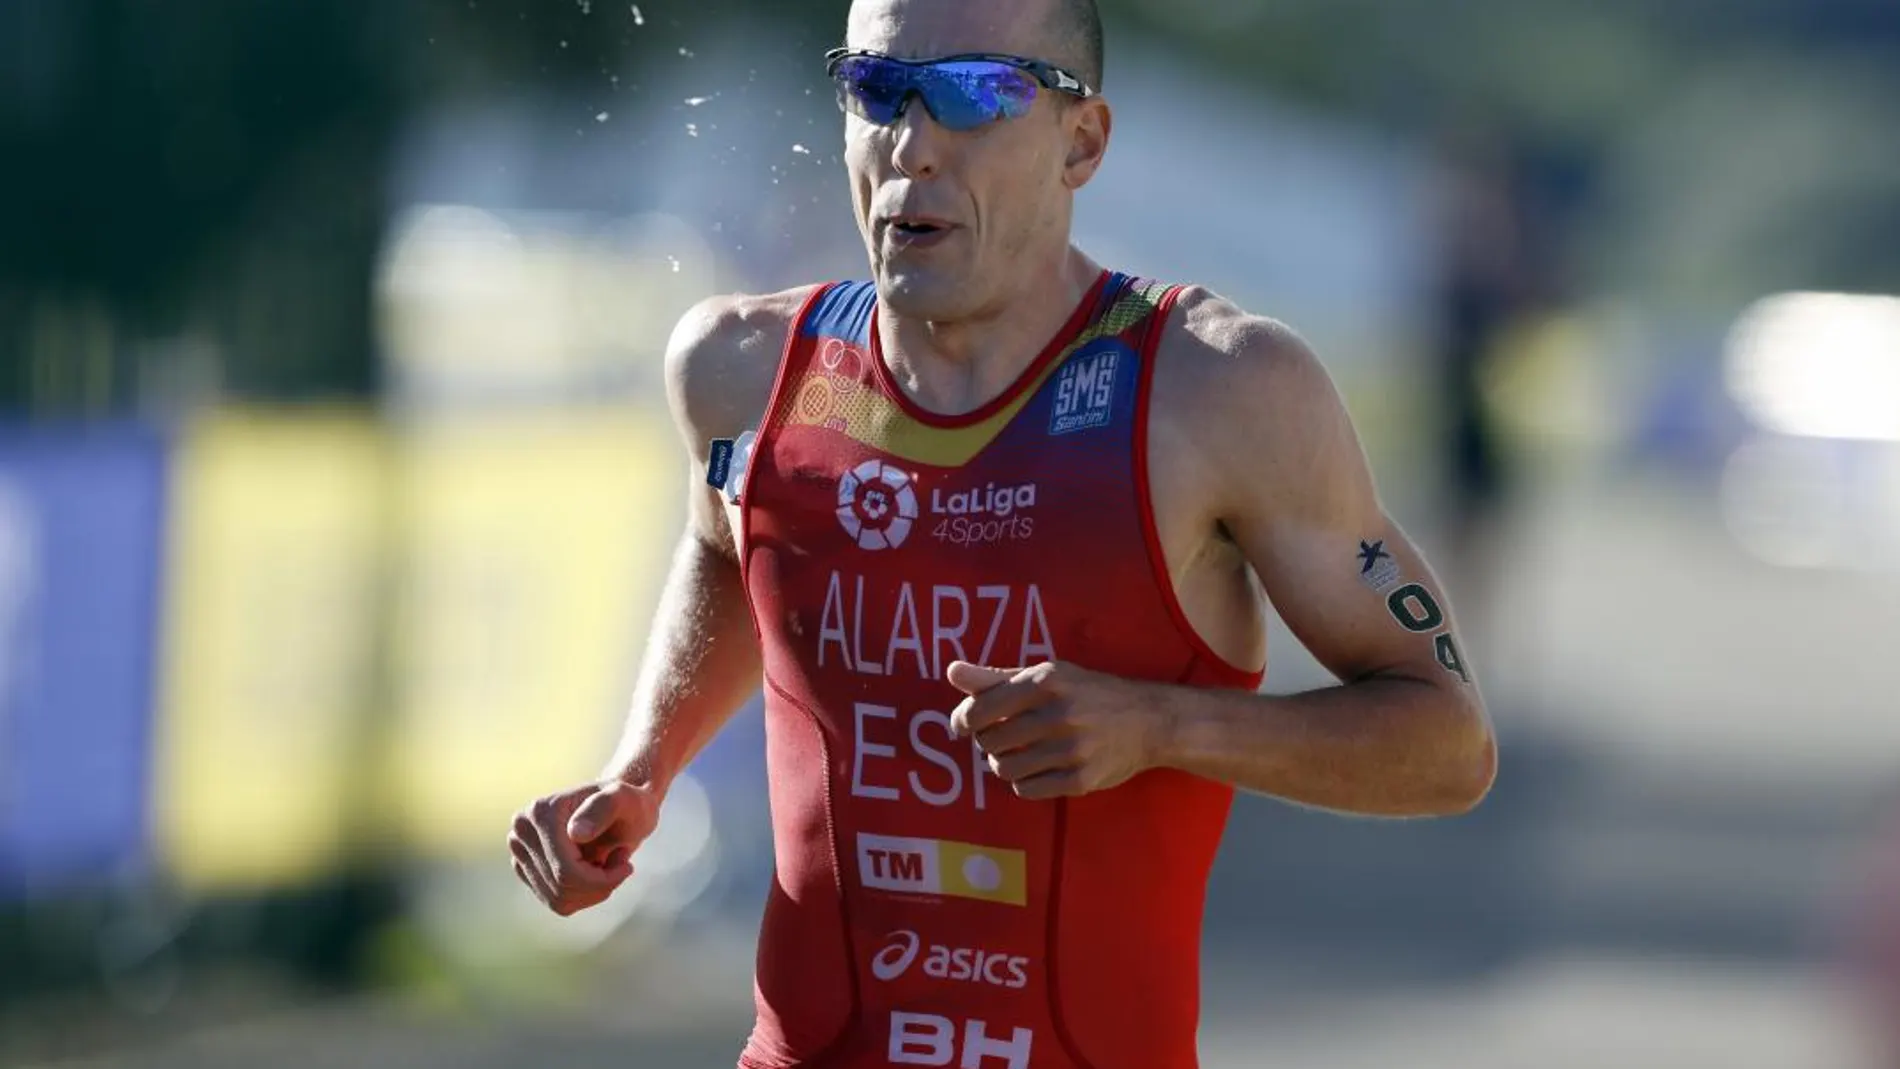 El español Fernando Alarza, plata en el Europeo de triatlón. Foto: Ap